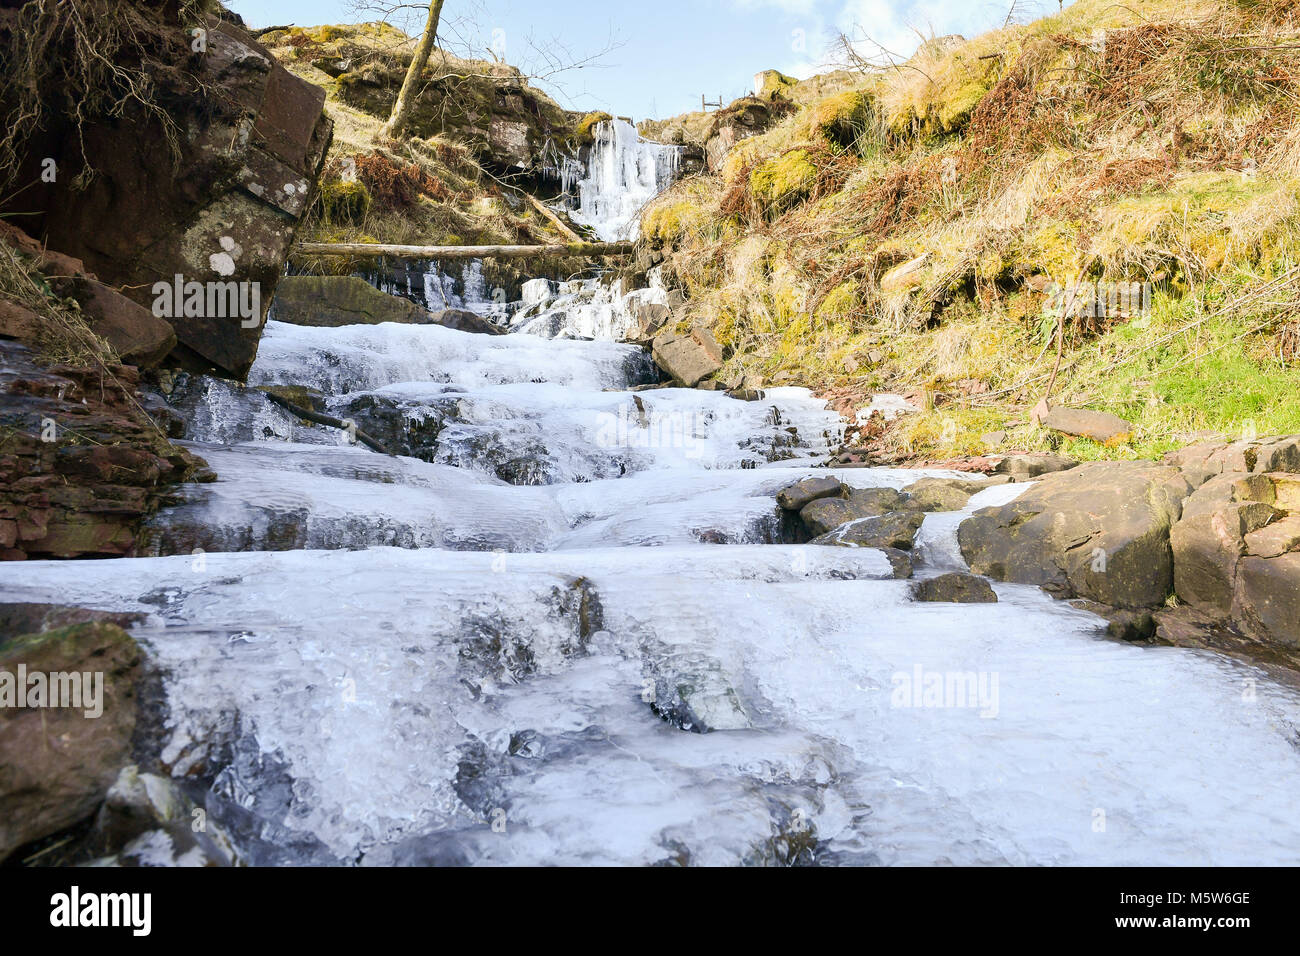 Una cascada congelada cerca de Pen y ventilador de montaña en el Parque Nacional de Brecon Beacon, Gales, como algunas partes del Reino Unido están configurados para sentir más frío que el Círculo Polar Ártico como temperaturas de congelación continúa en la próxima semana. Foto de stock